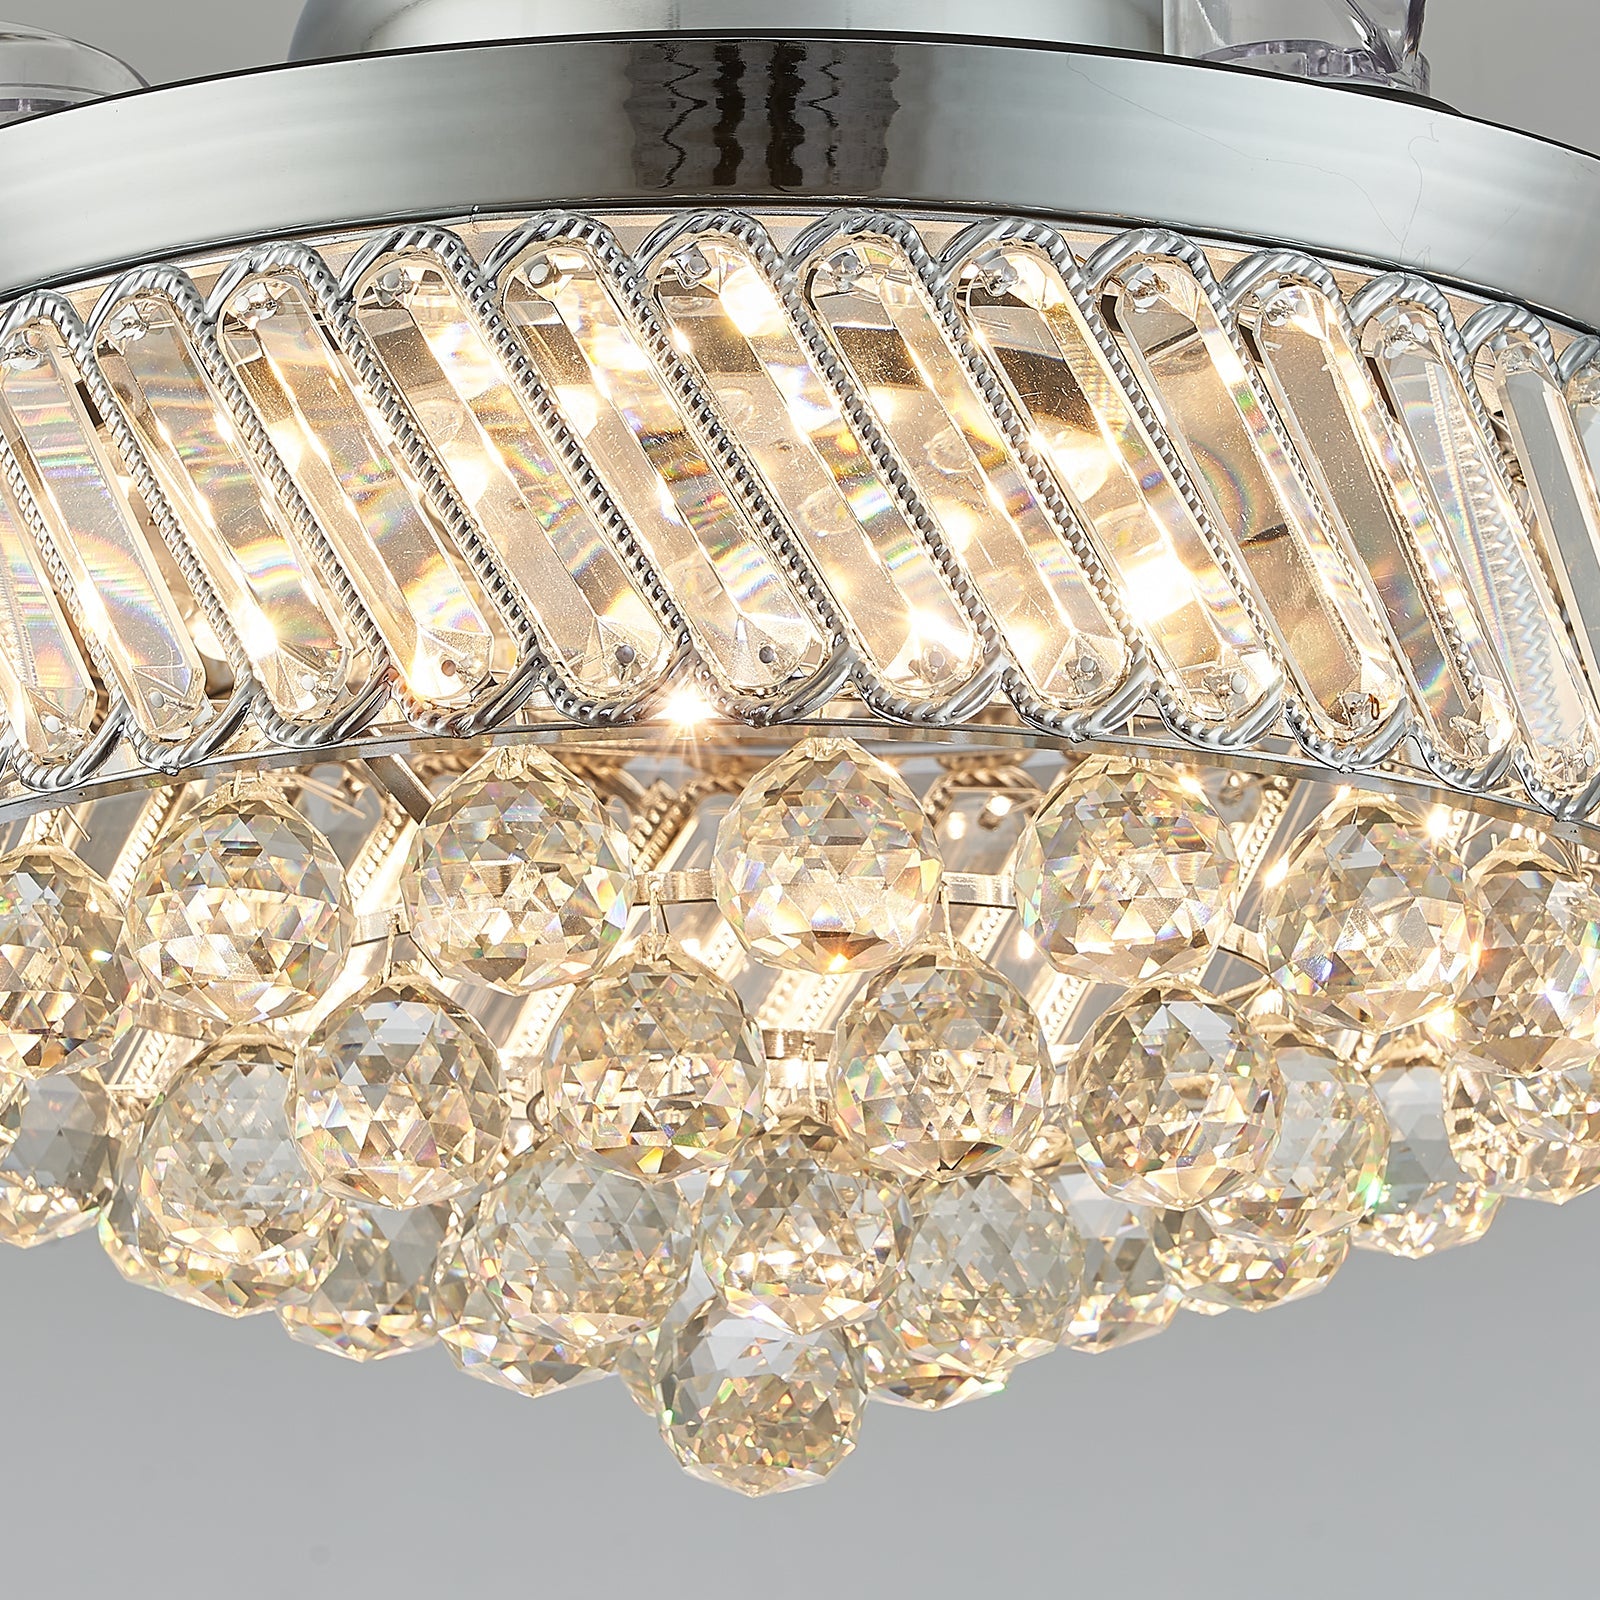 Alvin Dimmable Fandelier Crystal Ceiling Fans LED Chandelier Remote Bedroom Polished Chrome 36”